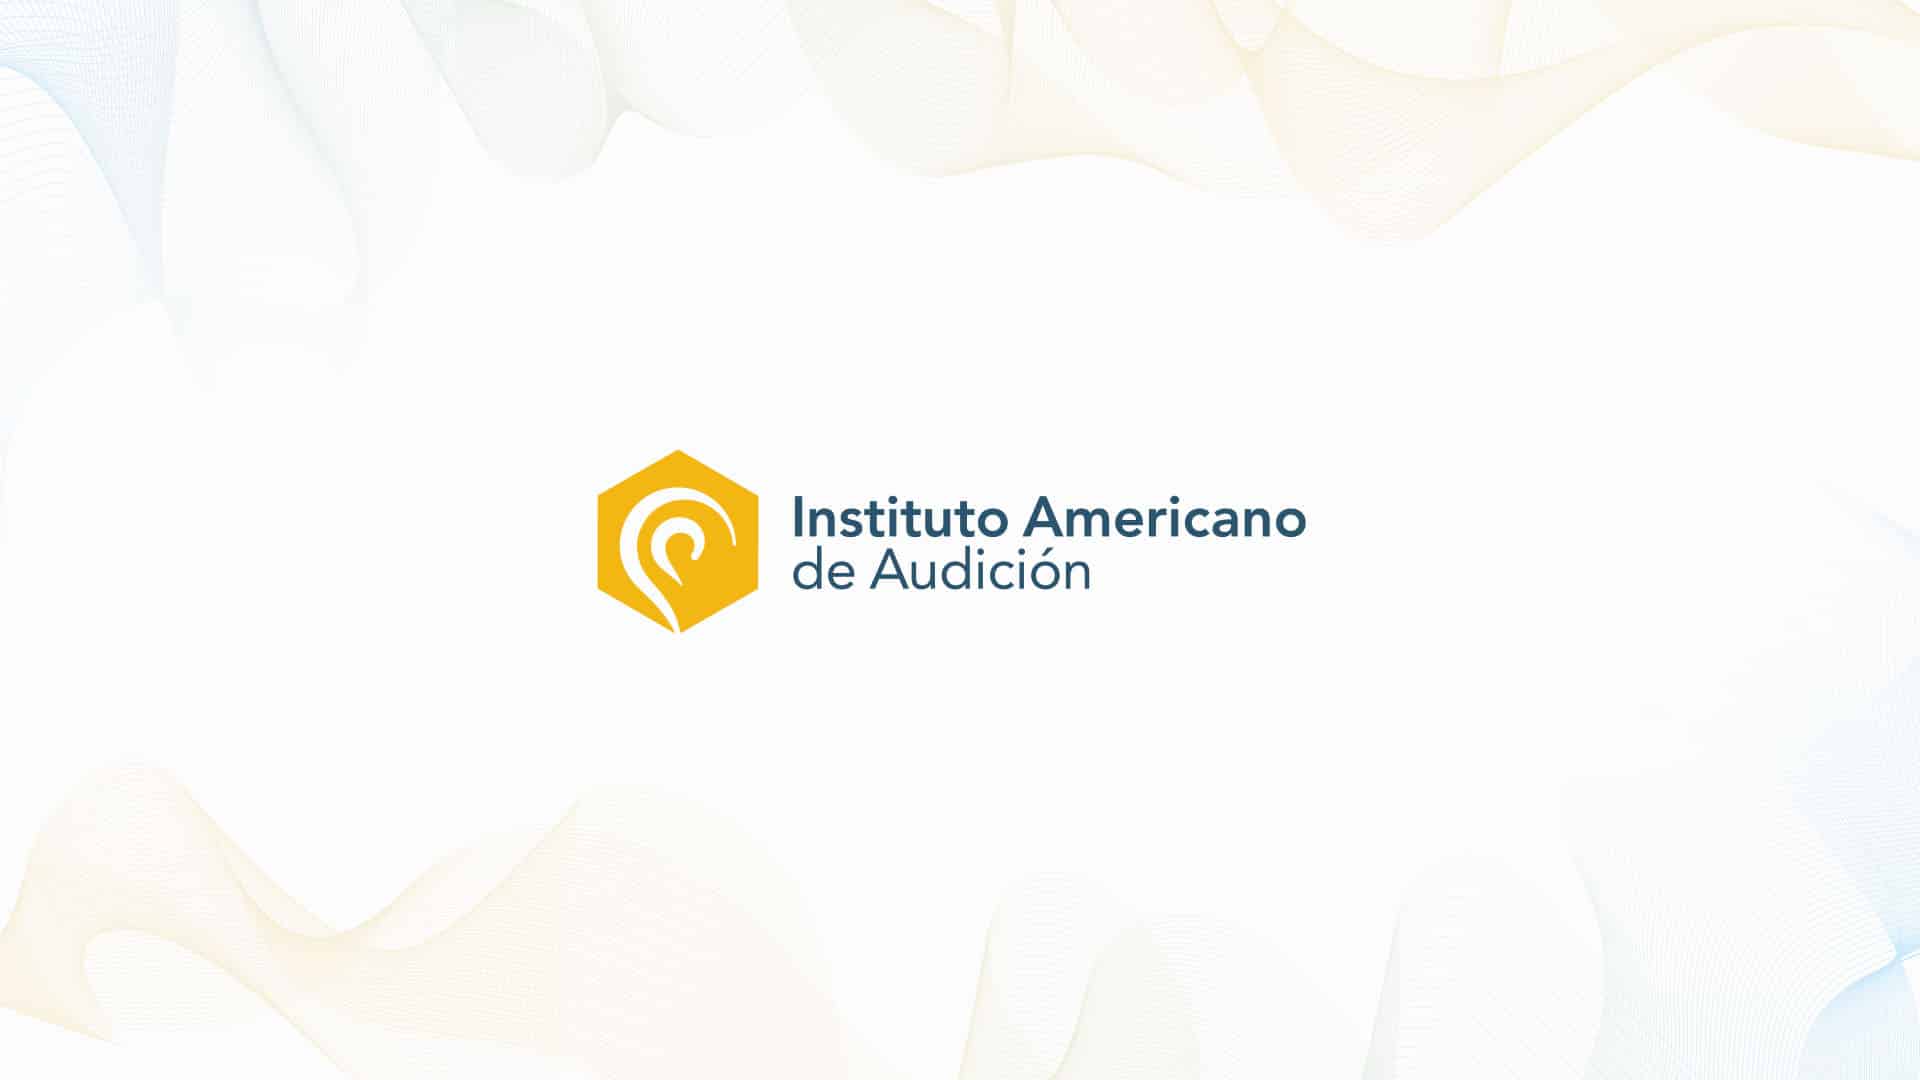 Instituto Americano de Audición